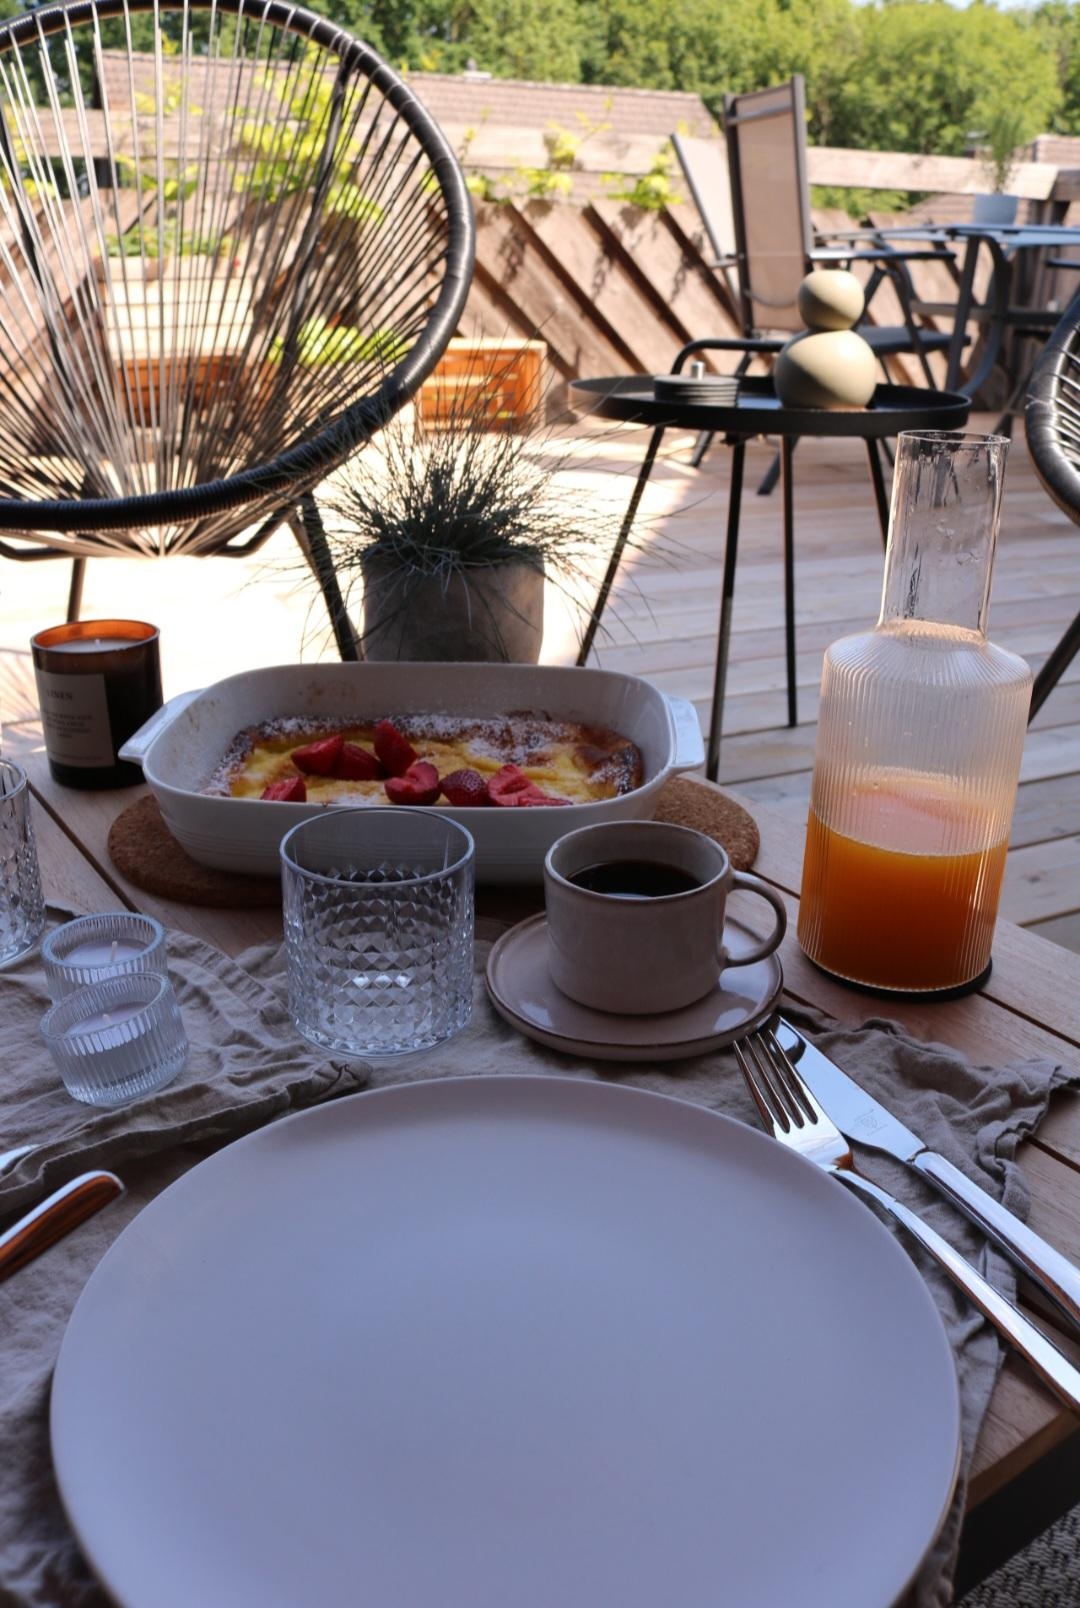 Bereit für den Frühling und ein Sonntags-Frühstück auf der Dachterasse☀️
#couchstyle #frühstückstisch #foodchallenge 